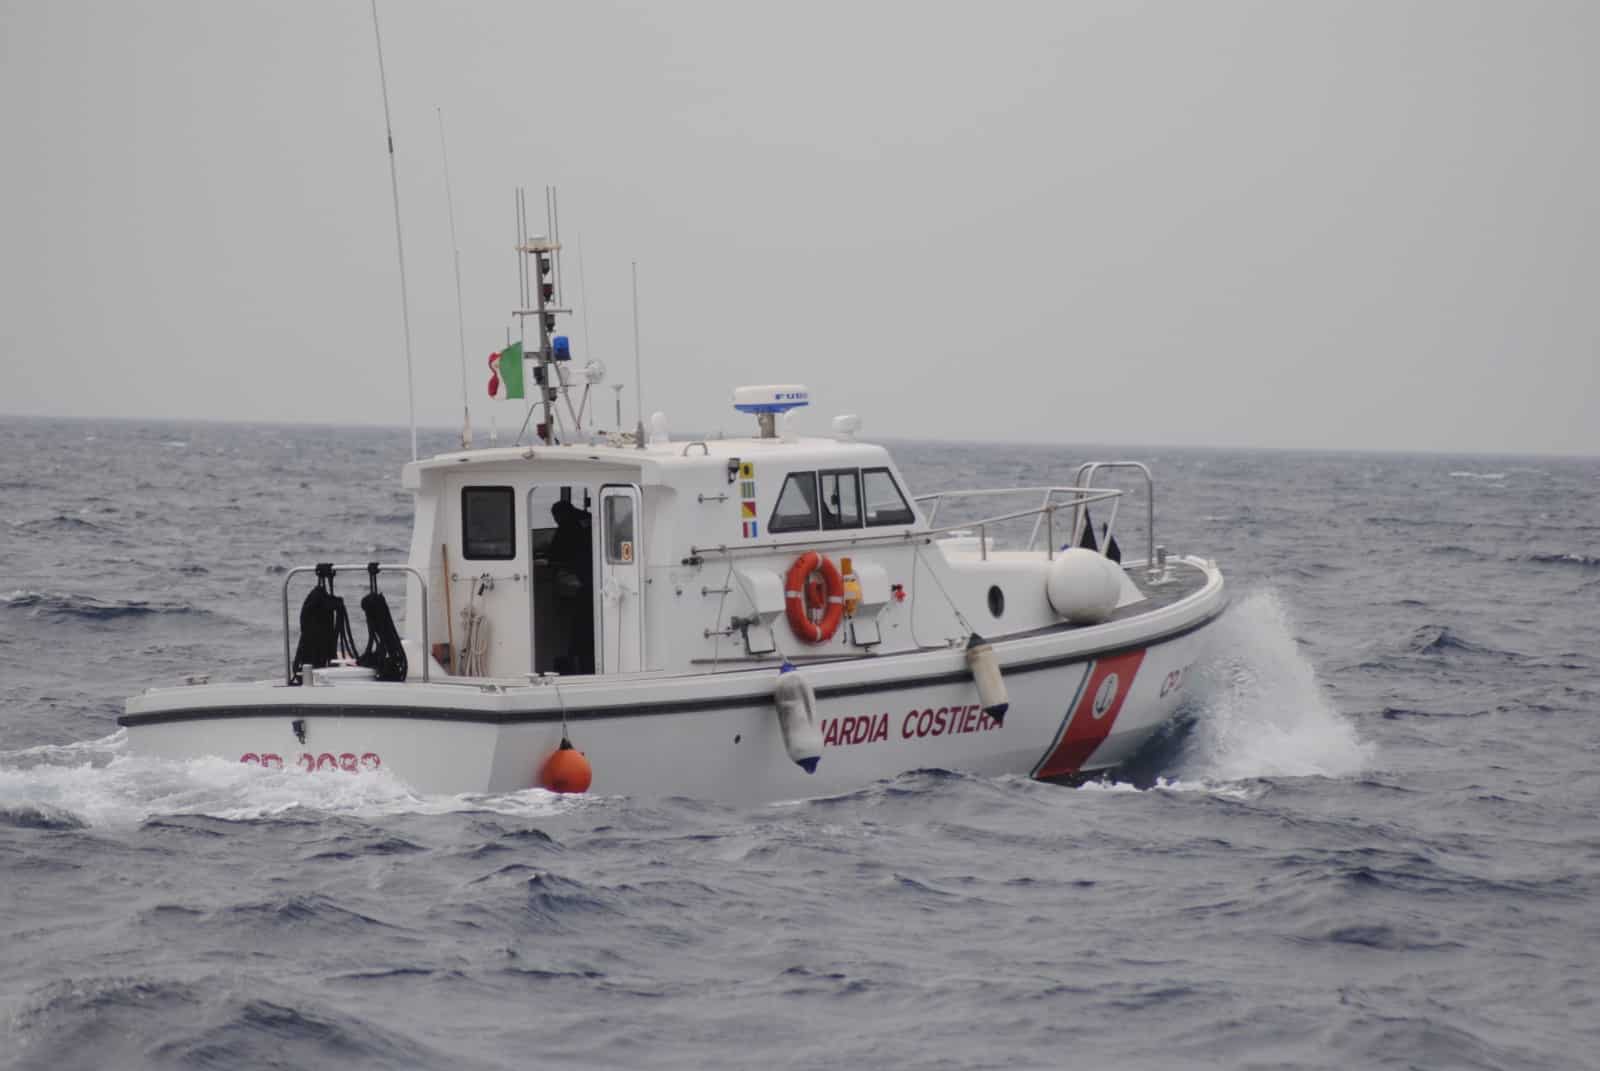 Disavventura in mare, resta bloccato con il motore in panne: l’operazione di salvataggio